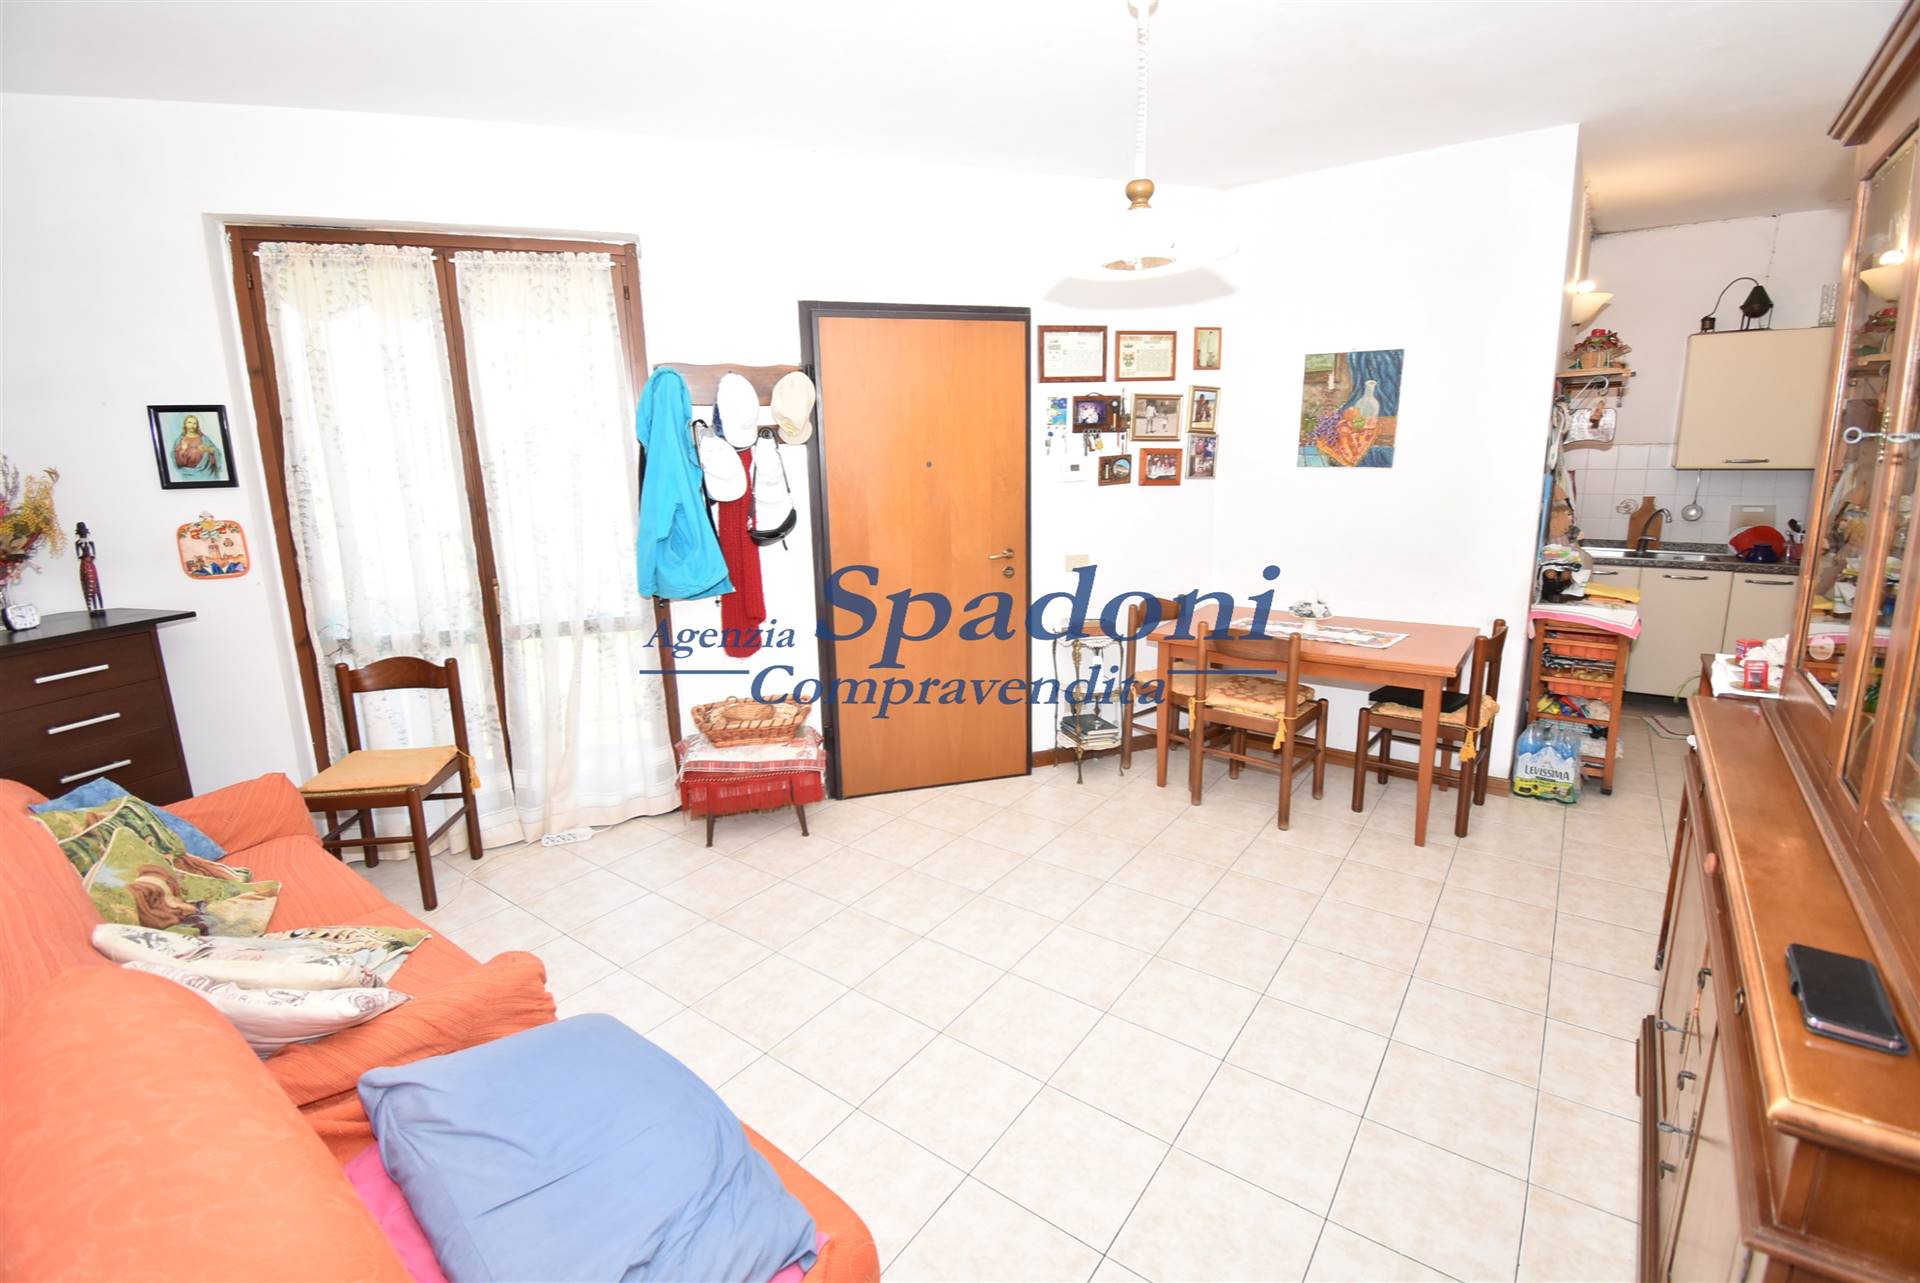 Appartamento in vendita a Buggiano, 3 locali, prezzo € 99.000 | PortaleAgenzieImmobiliari.it